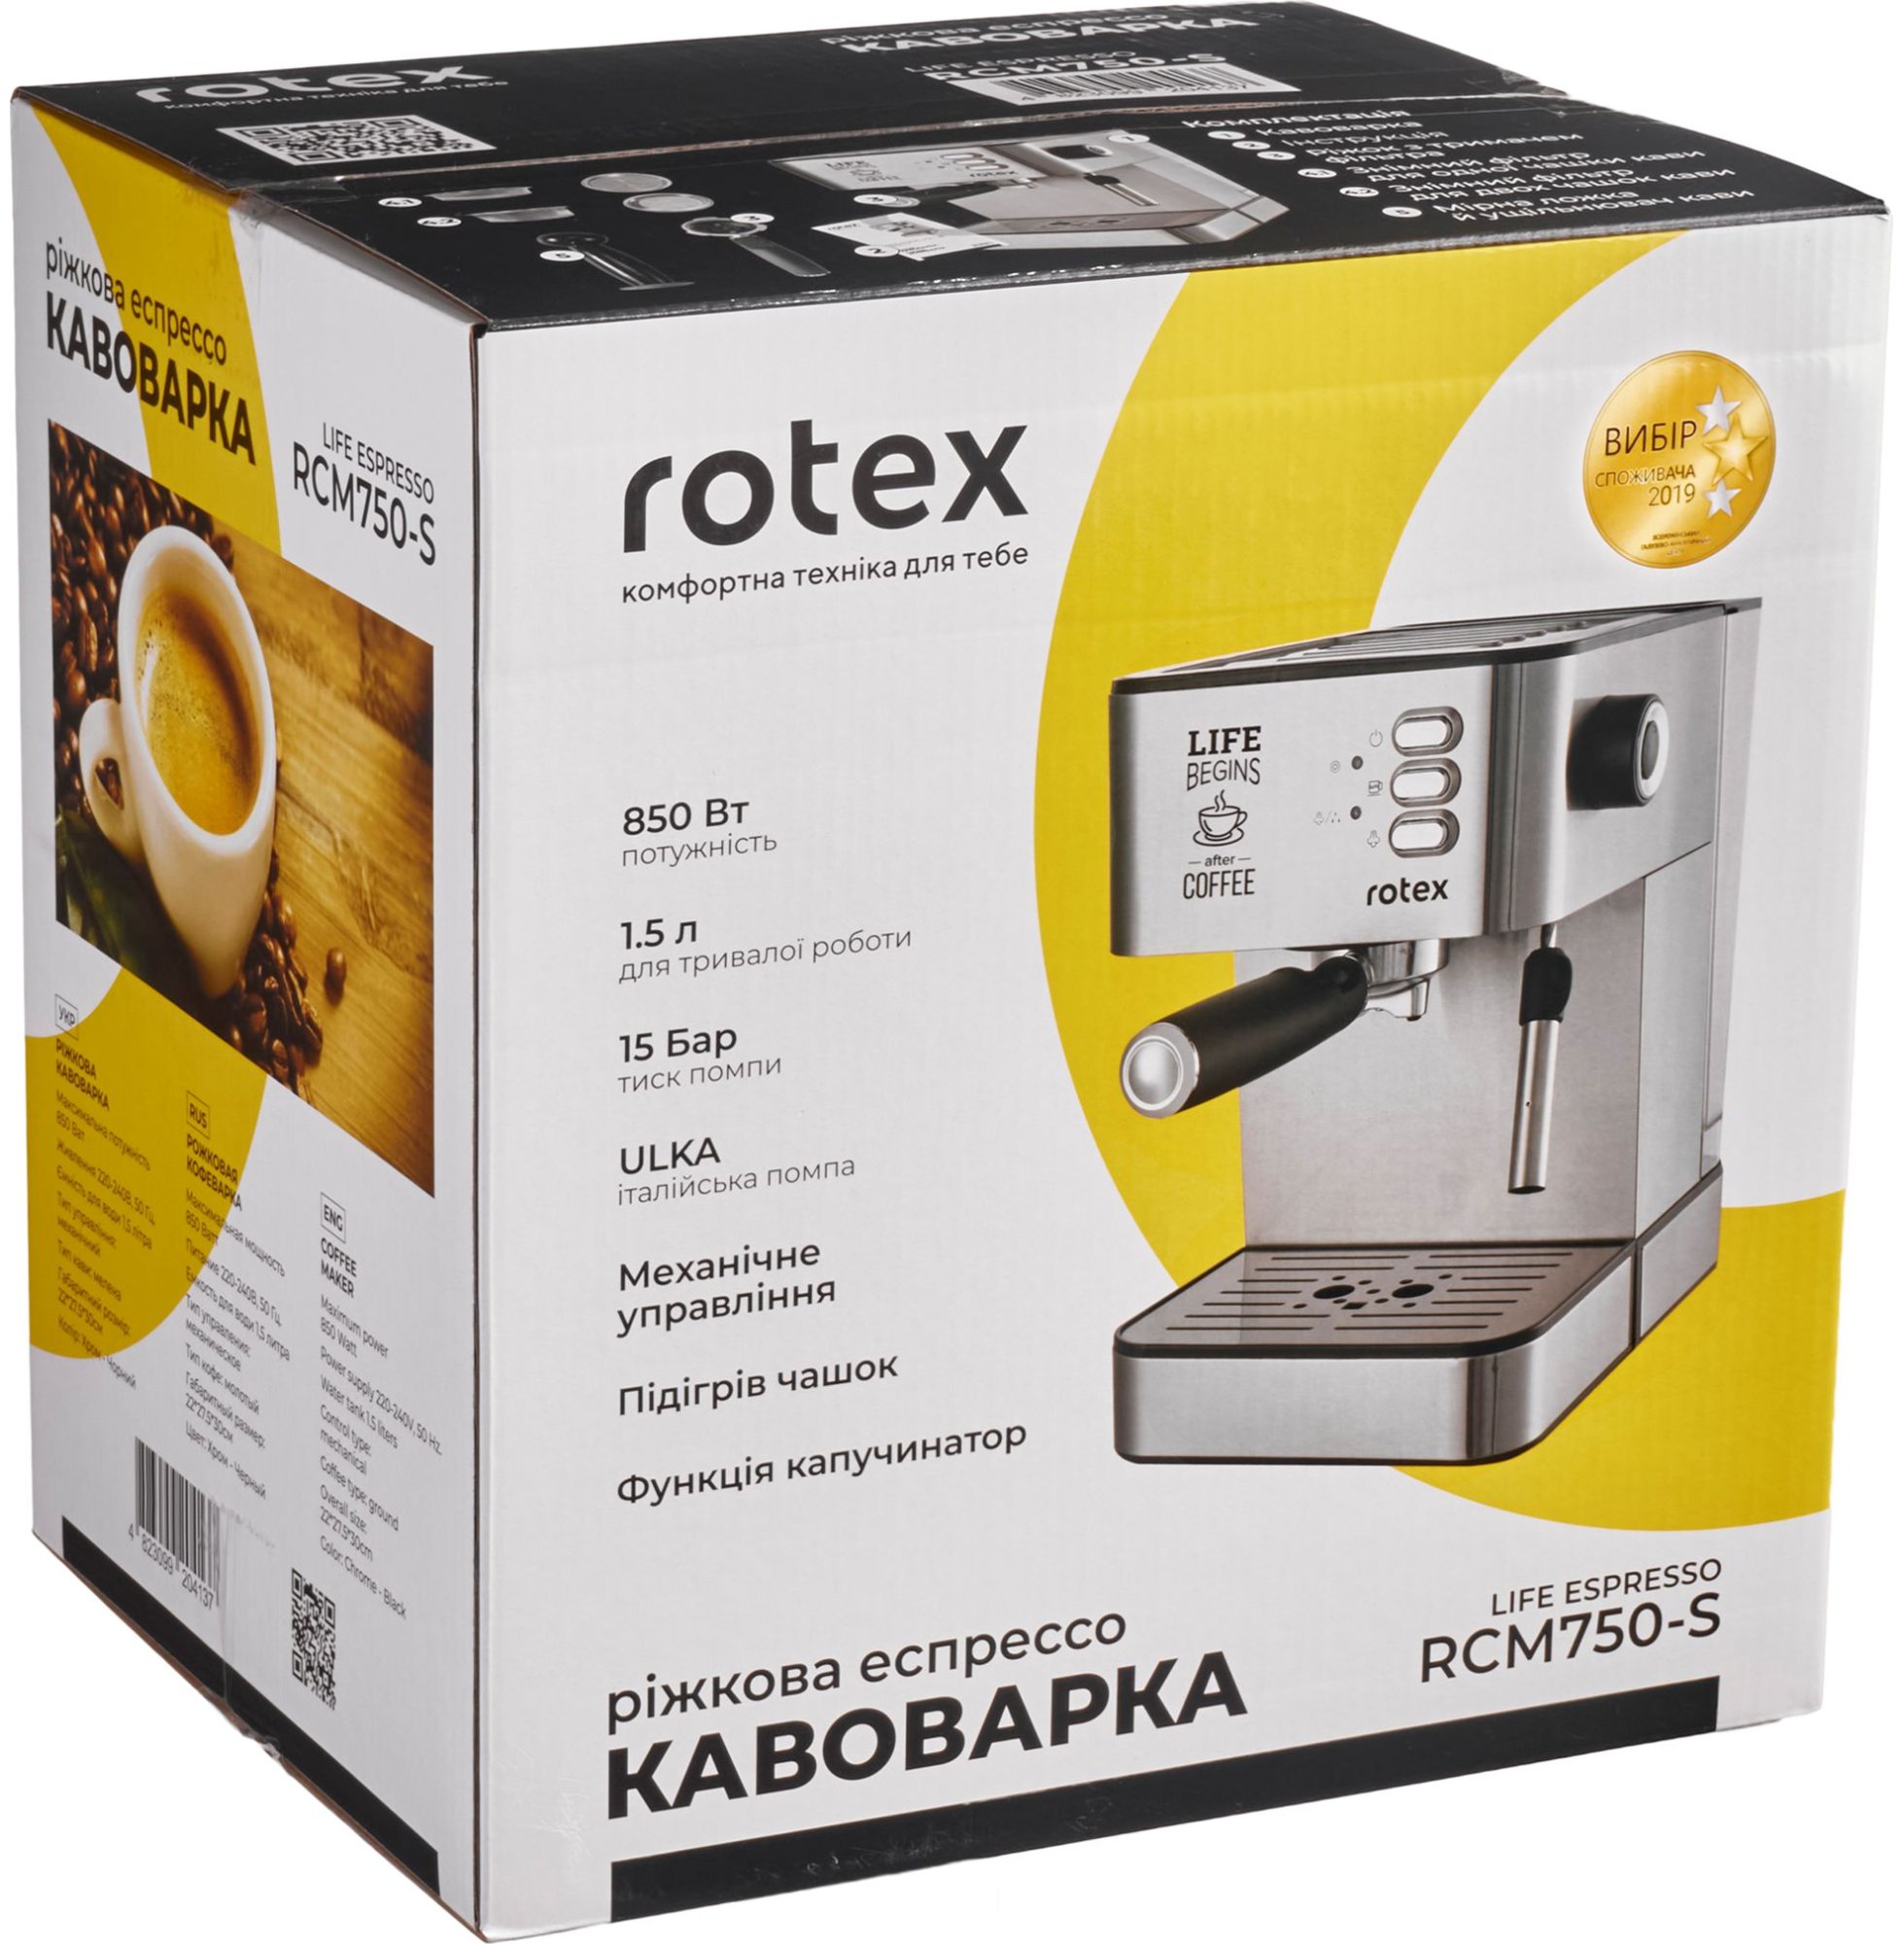 Кофеварка Rotex RCM750-S Life Espresso отзывы - изображения 5